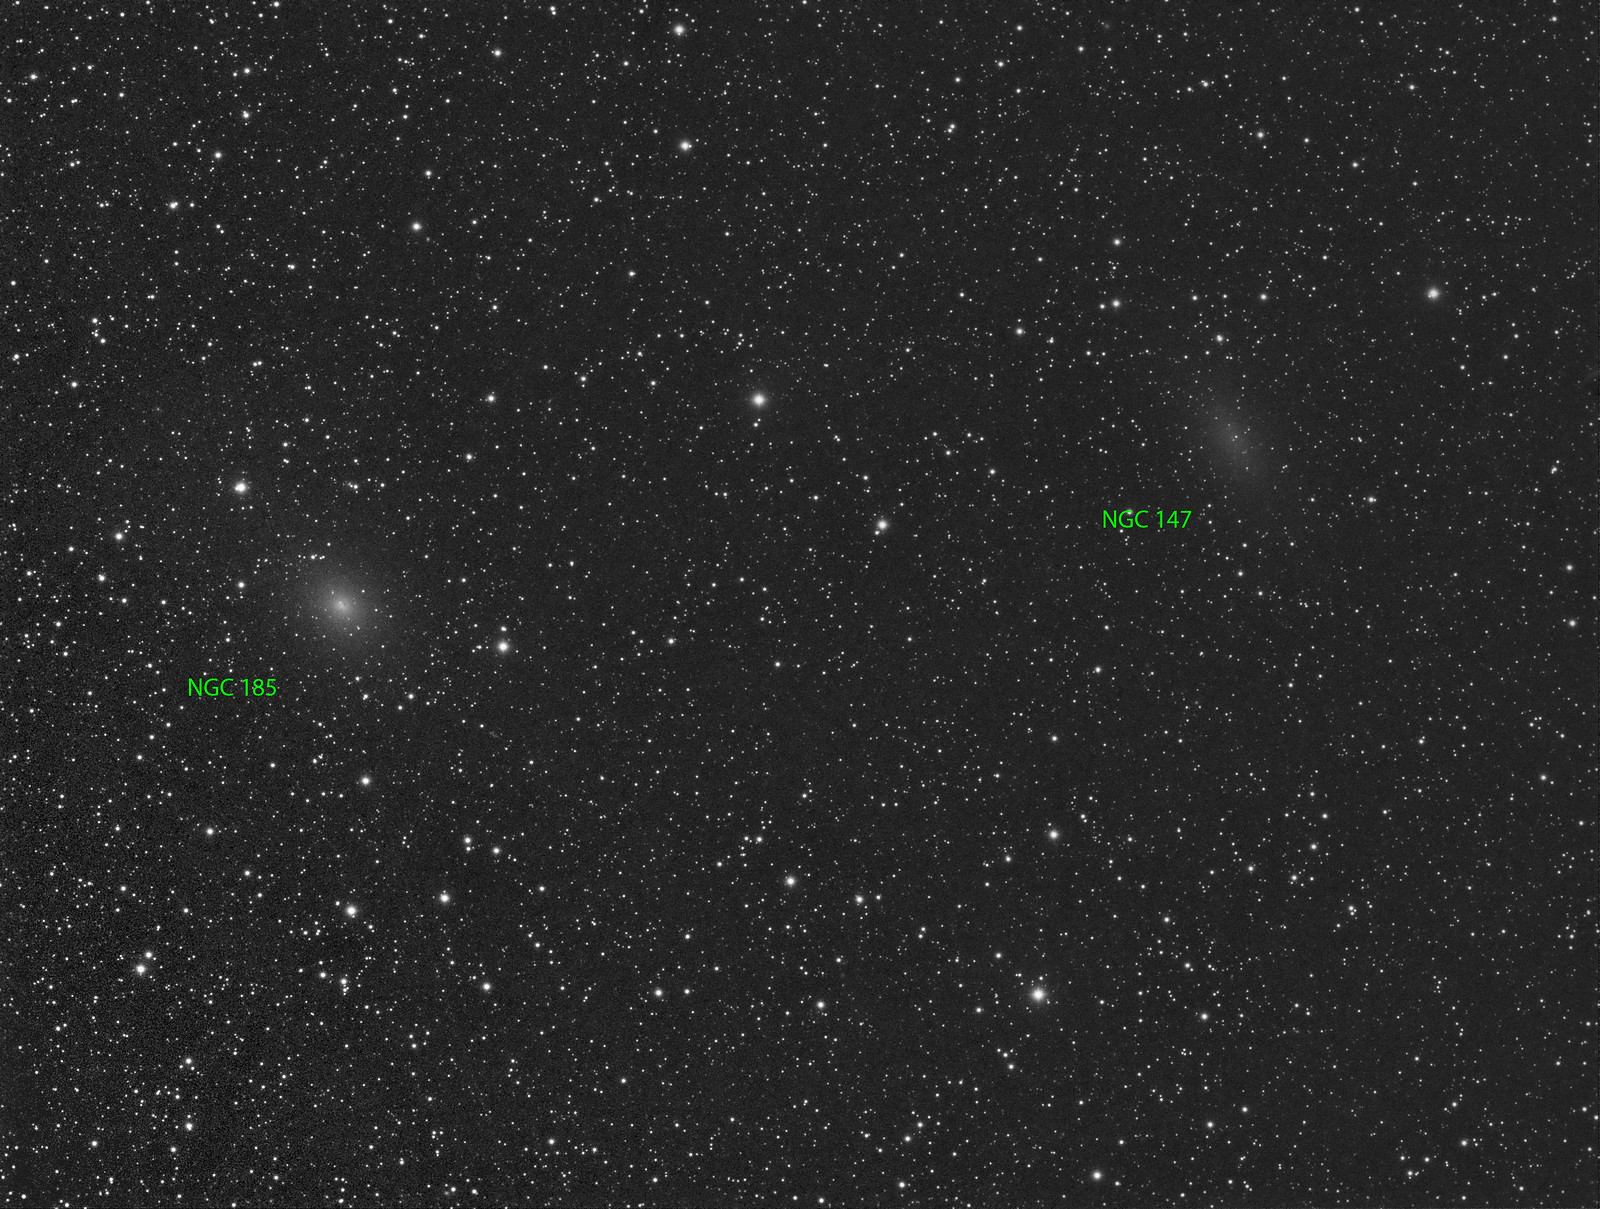 017 - NGC 147 - Luminance